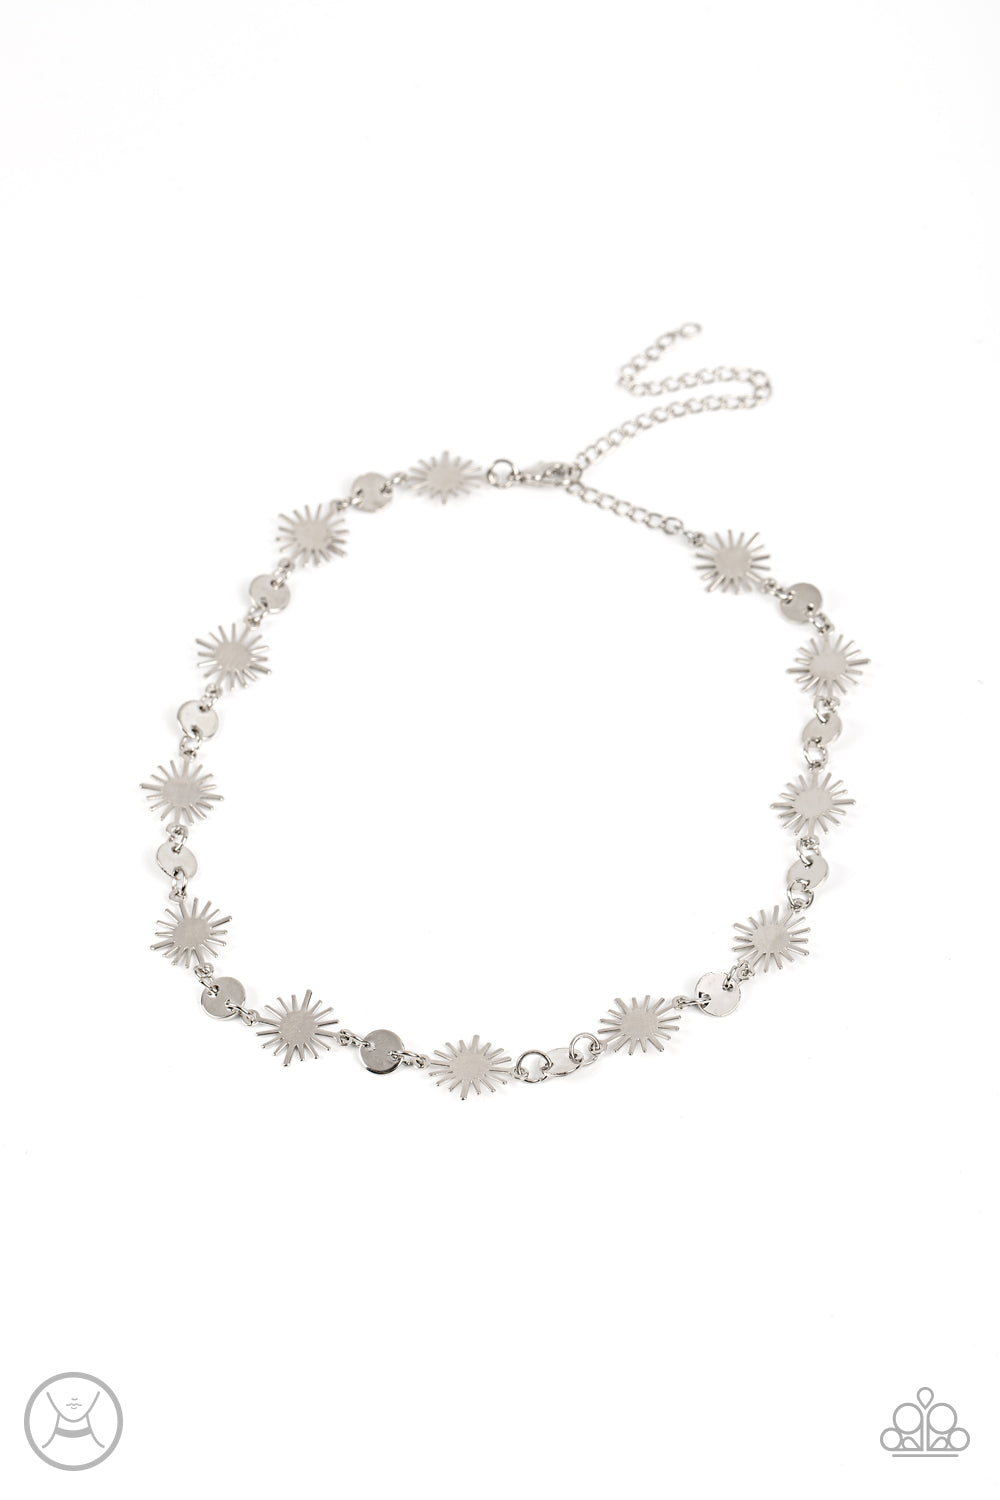 Astro Goddess - Silver Choker Necklace